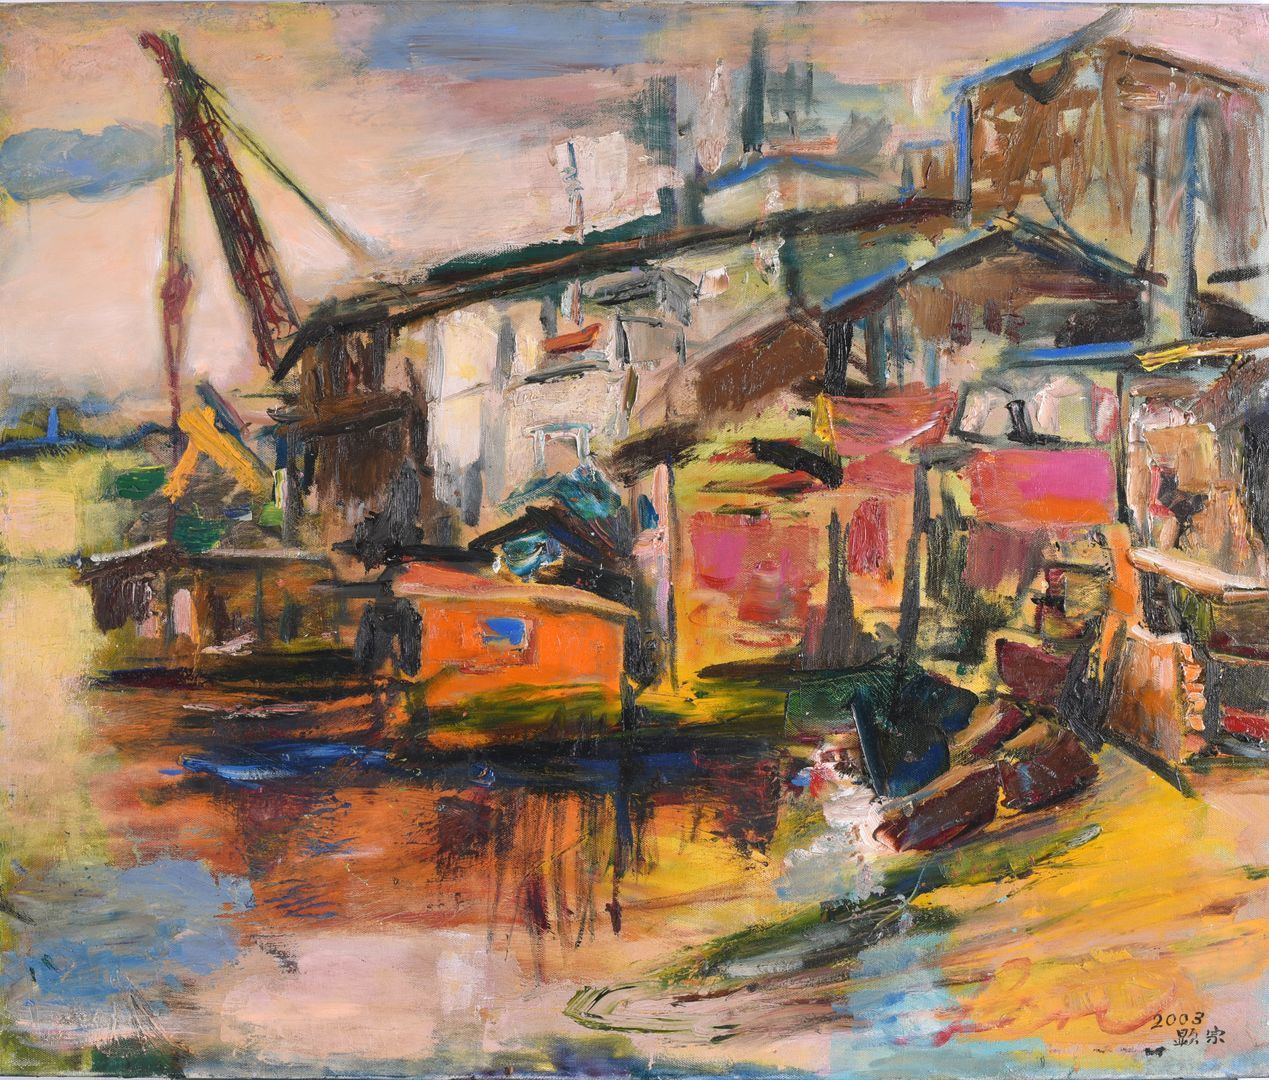 基隆港-60.5×72.5cm 油彩、畫布 2003